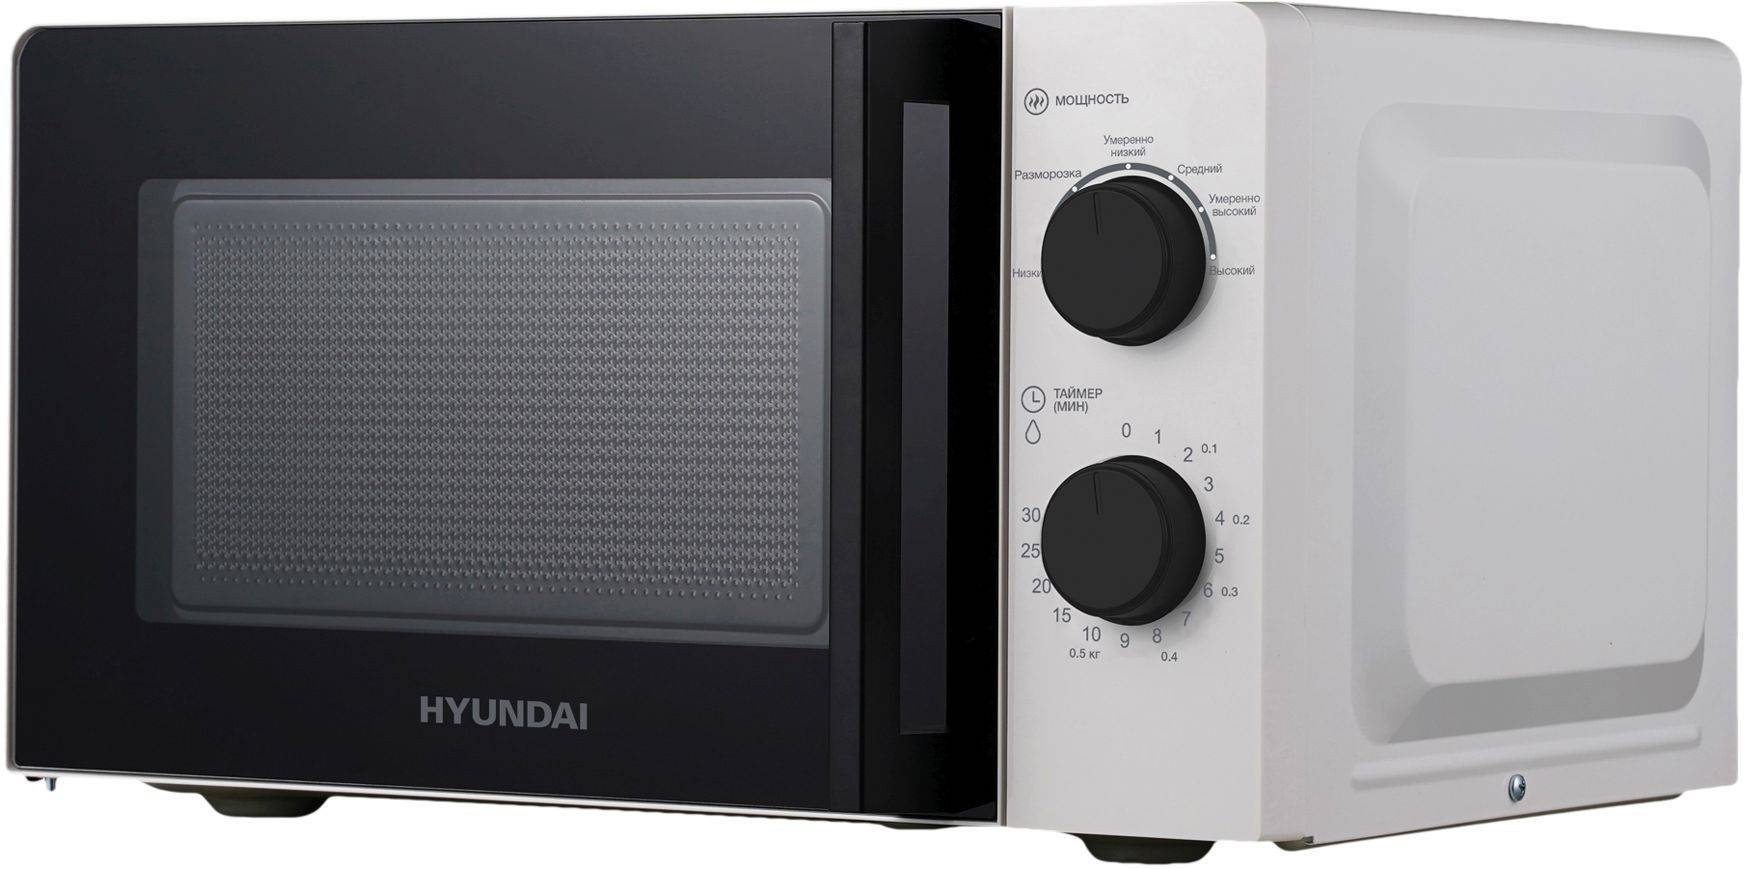 Микроволновая печь Hyundai HYM-M2047, белый